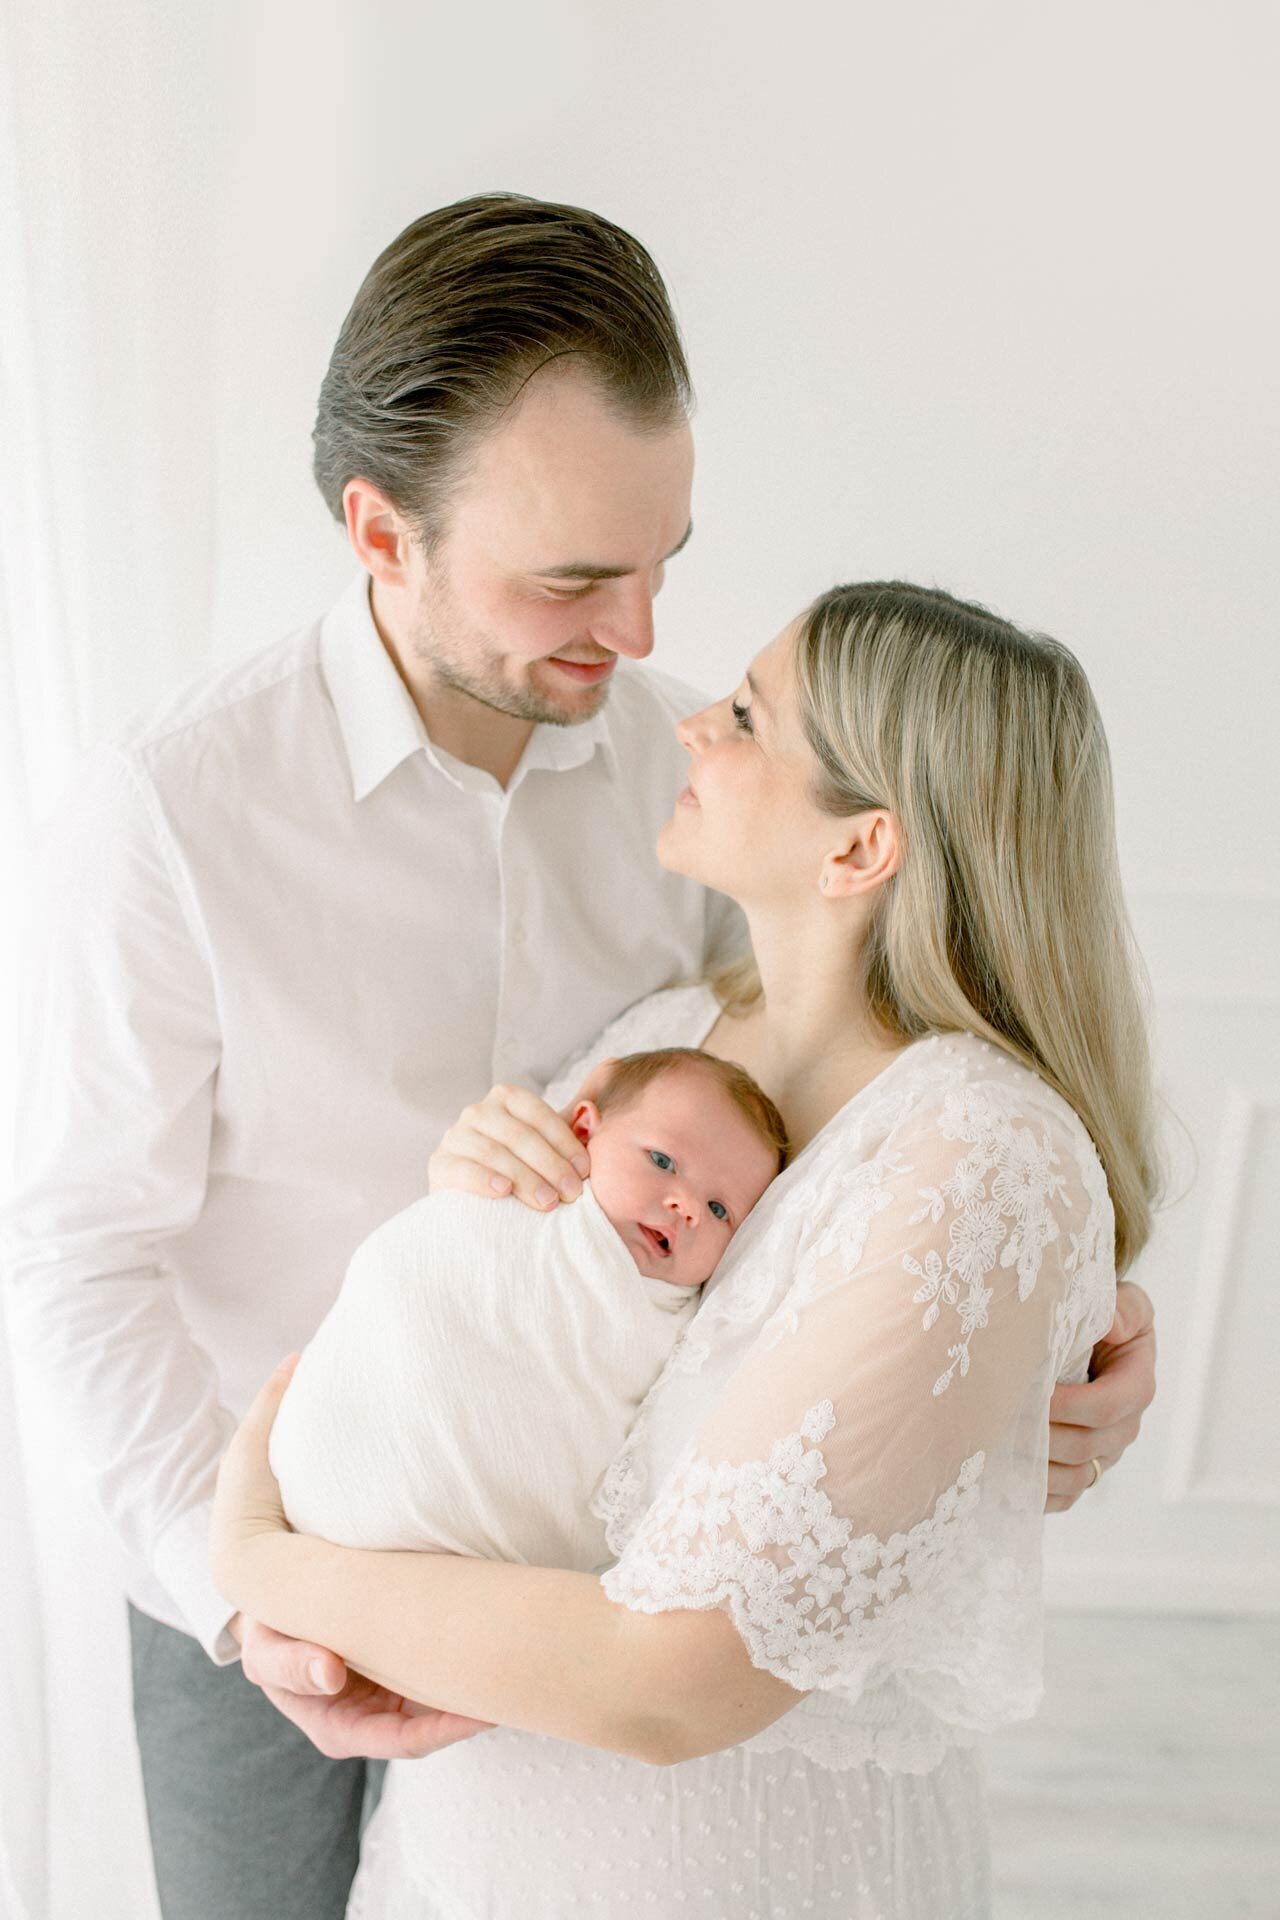 Neugeborenenfotoshooting nahe Bielefeld in weiß: Mutter in weißem Spitzenkleid hält Neugeborenes im Arm. Der Vater umarmt beide und Eltern sehen sich glücklich in die Augen.